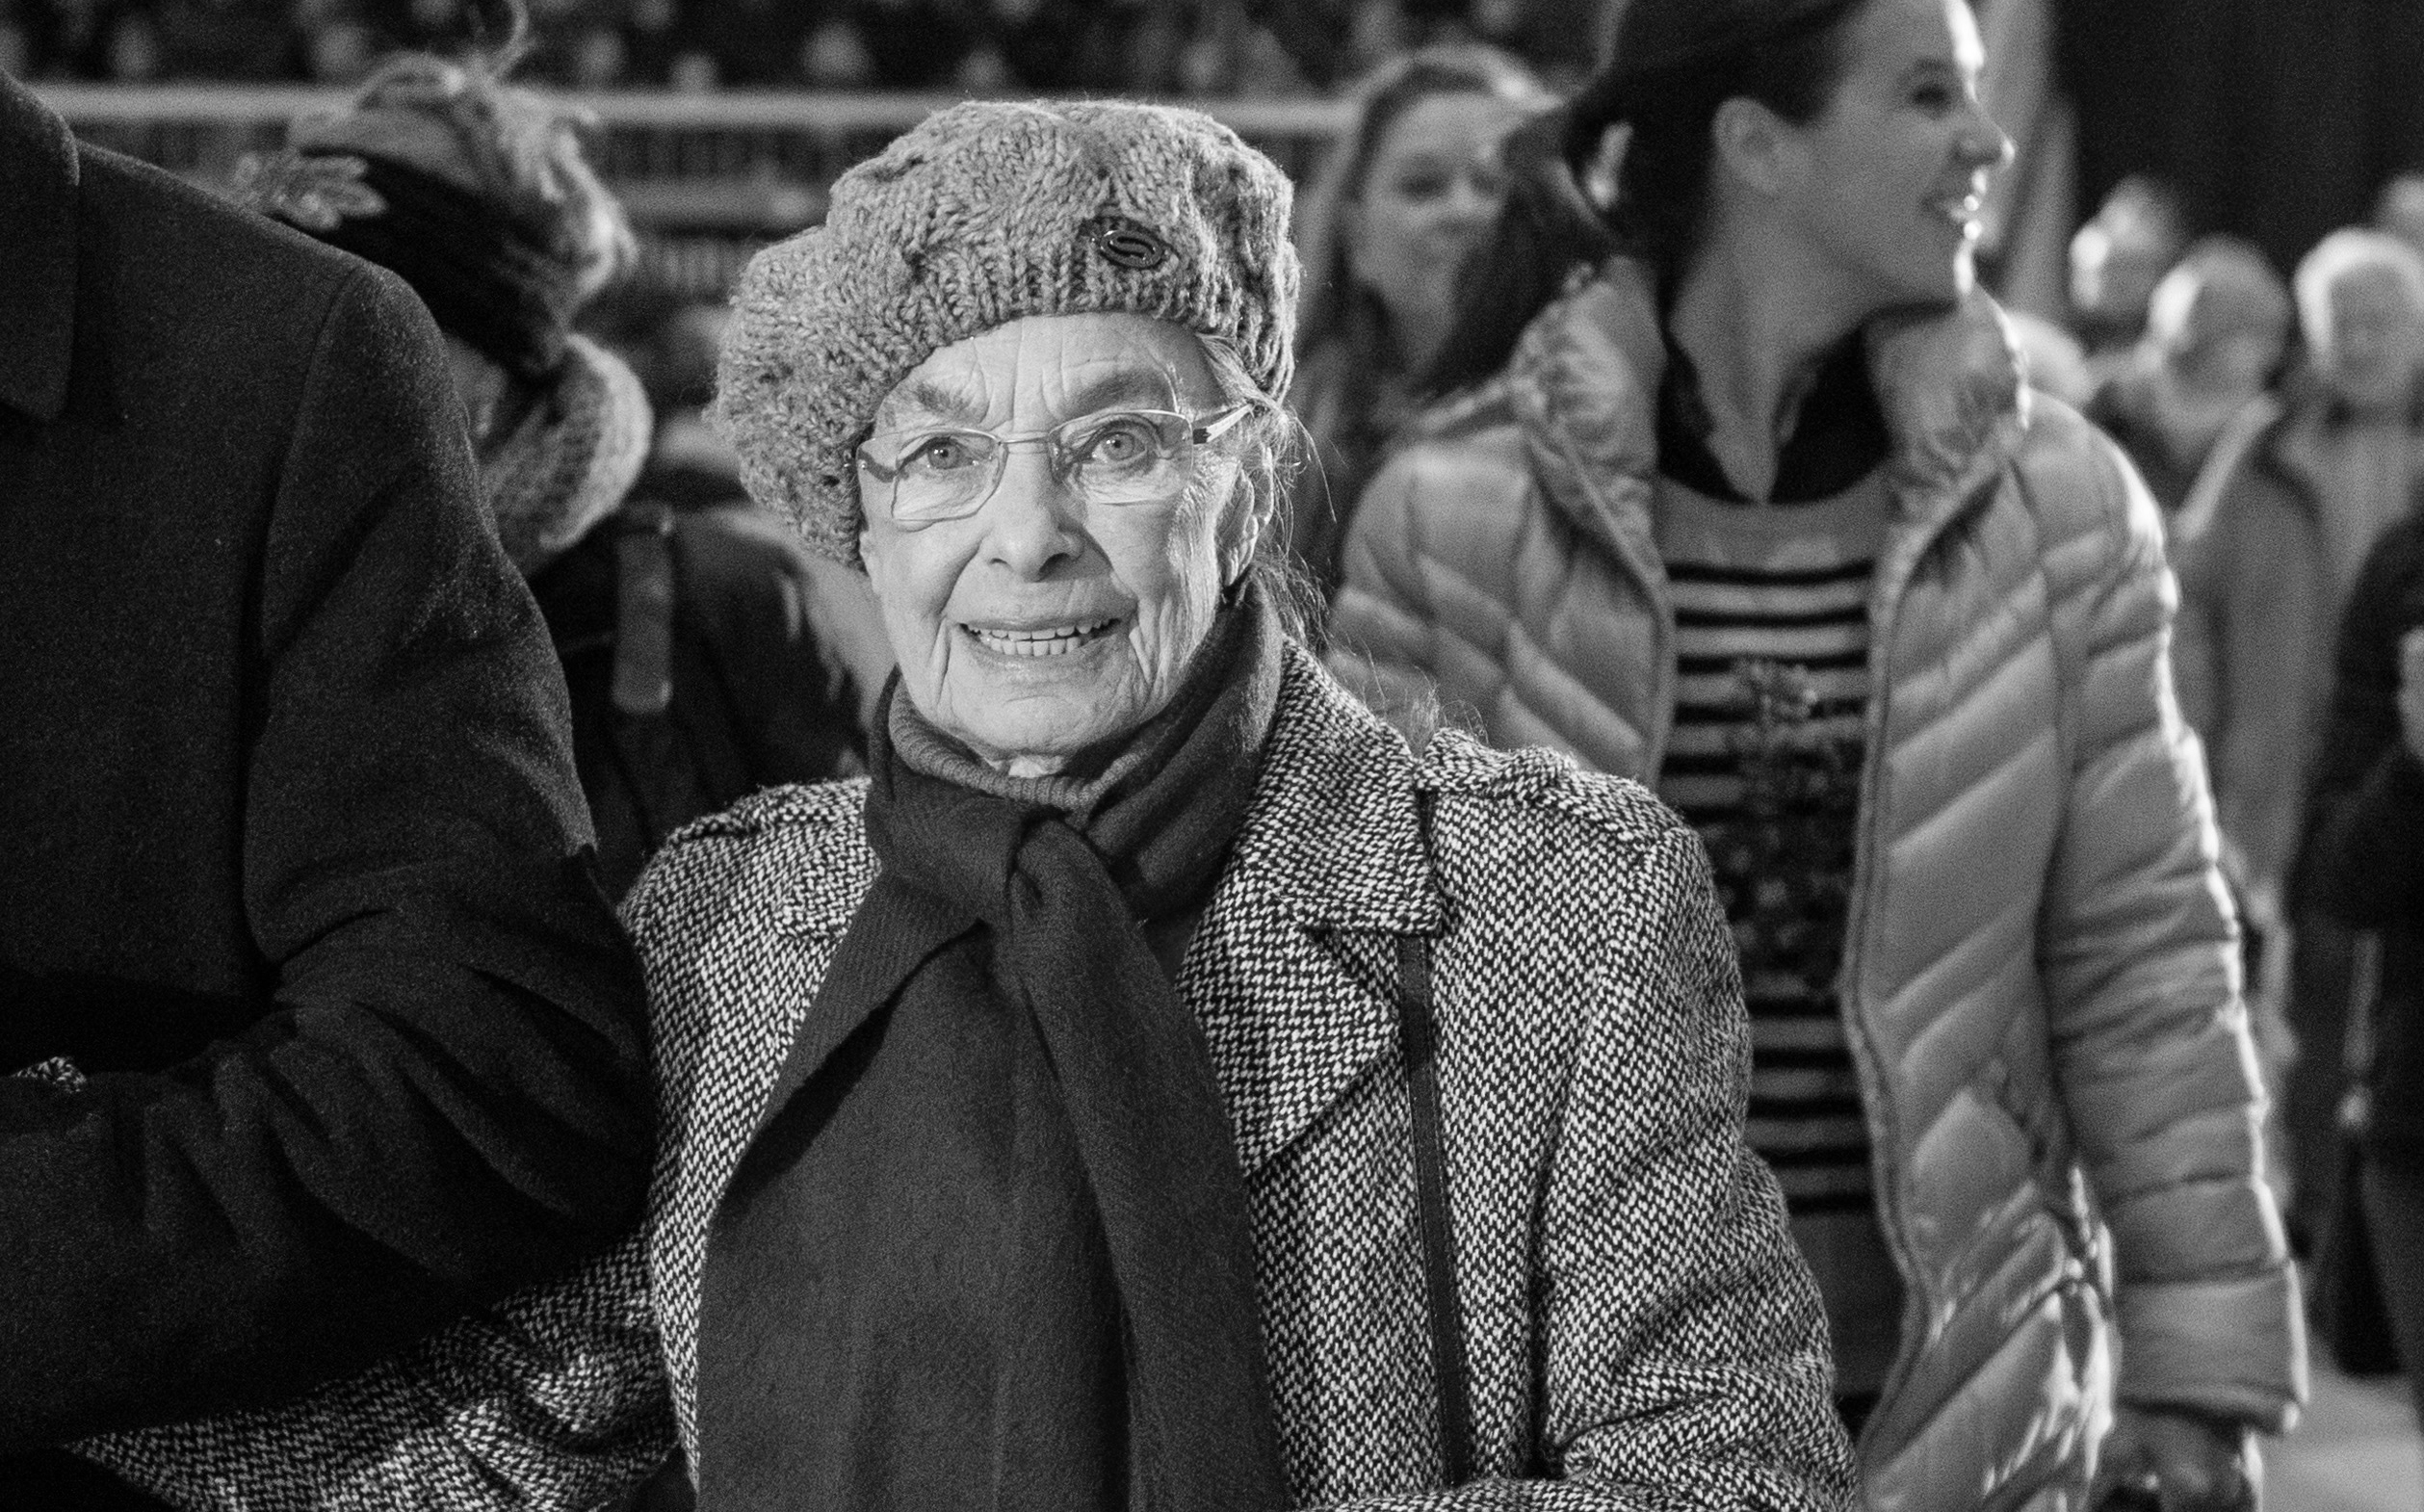 Die Chemnitzer Ehrenbürgerin Jutta Müller verstarb am 2. November. Auf dem Foto ist sie bei den Feierlichkeiten zu ihrem 90. Geburtstag in der Eissporthalle Chemnitz zu sehen.